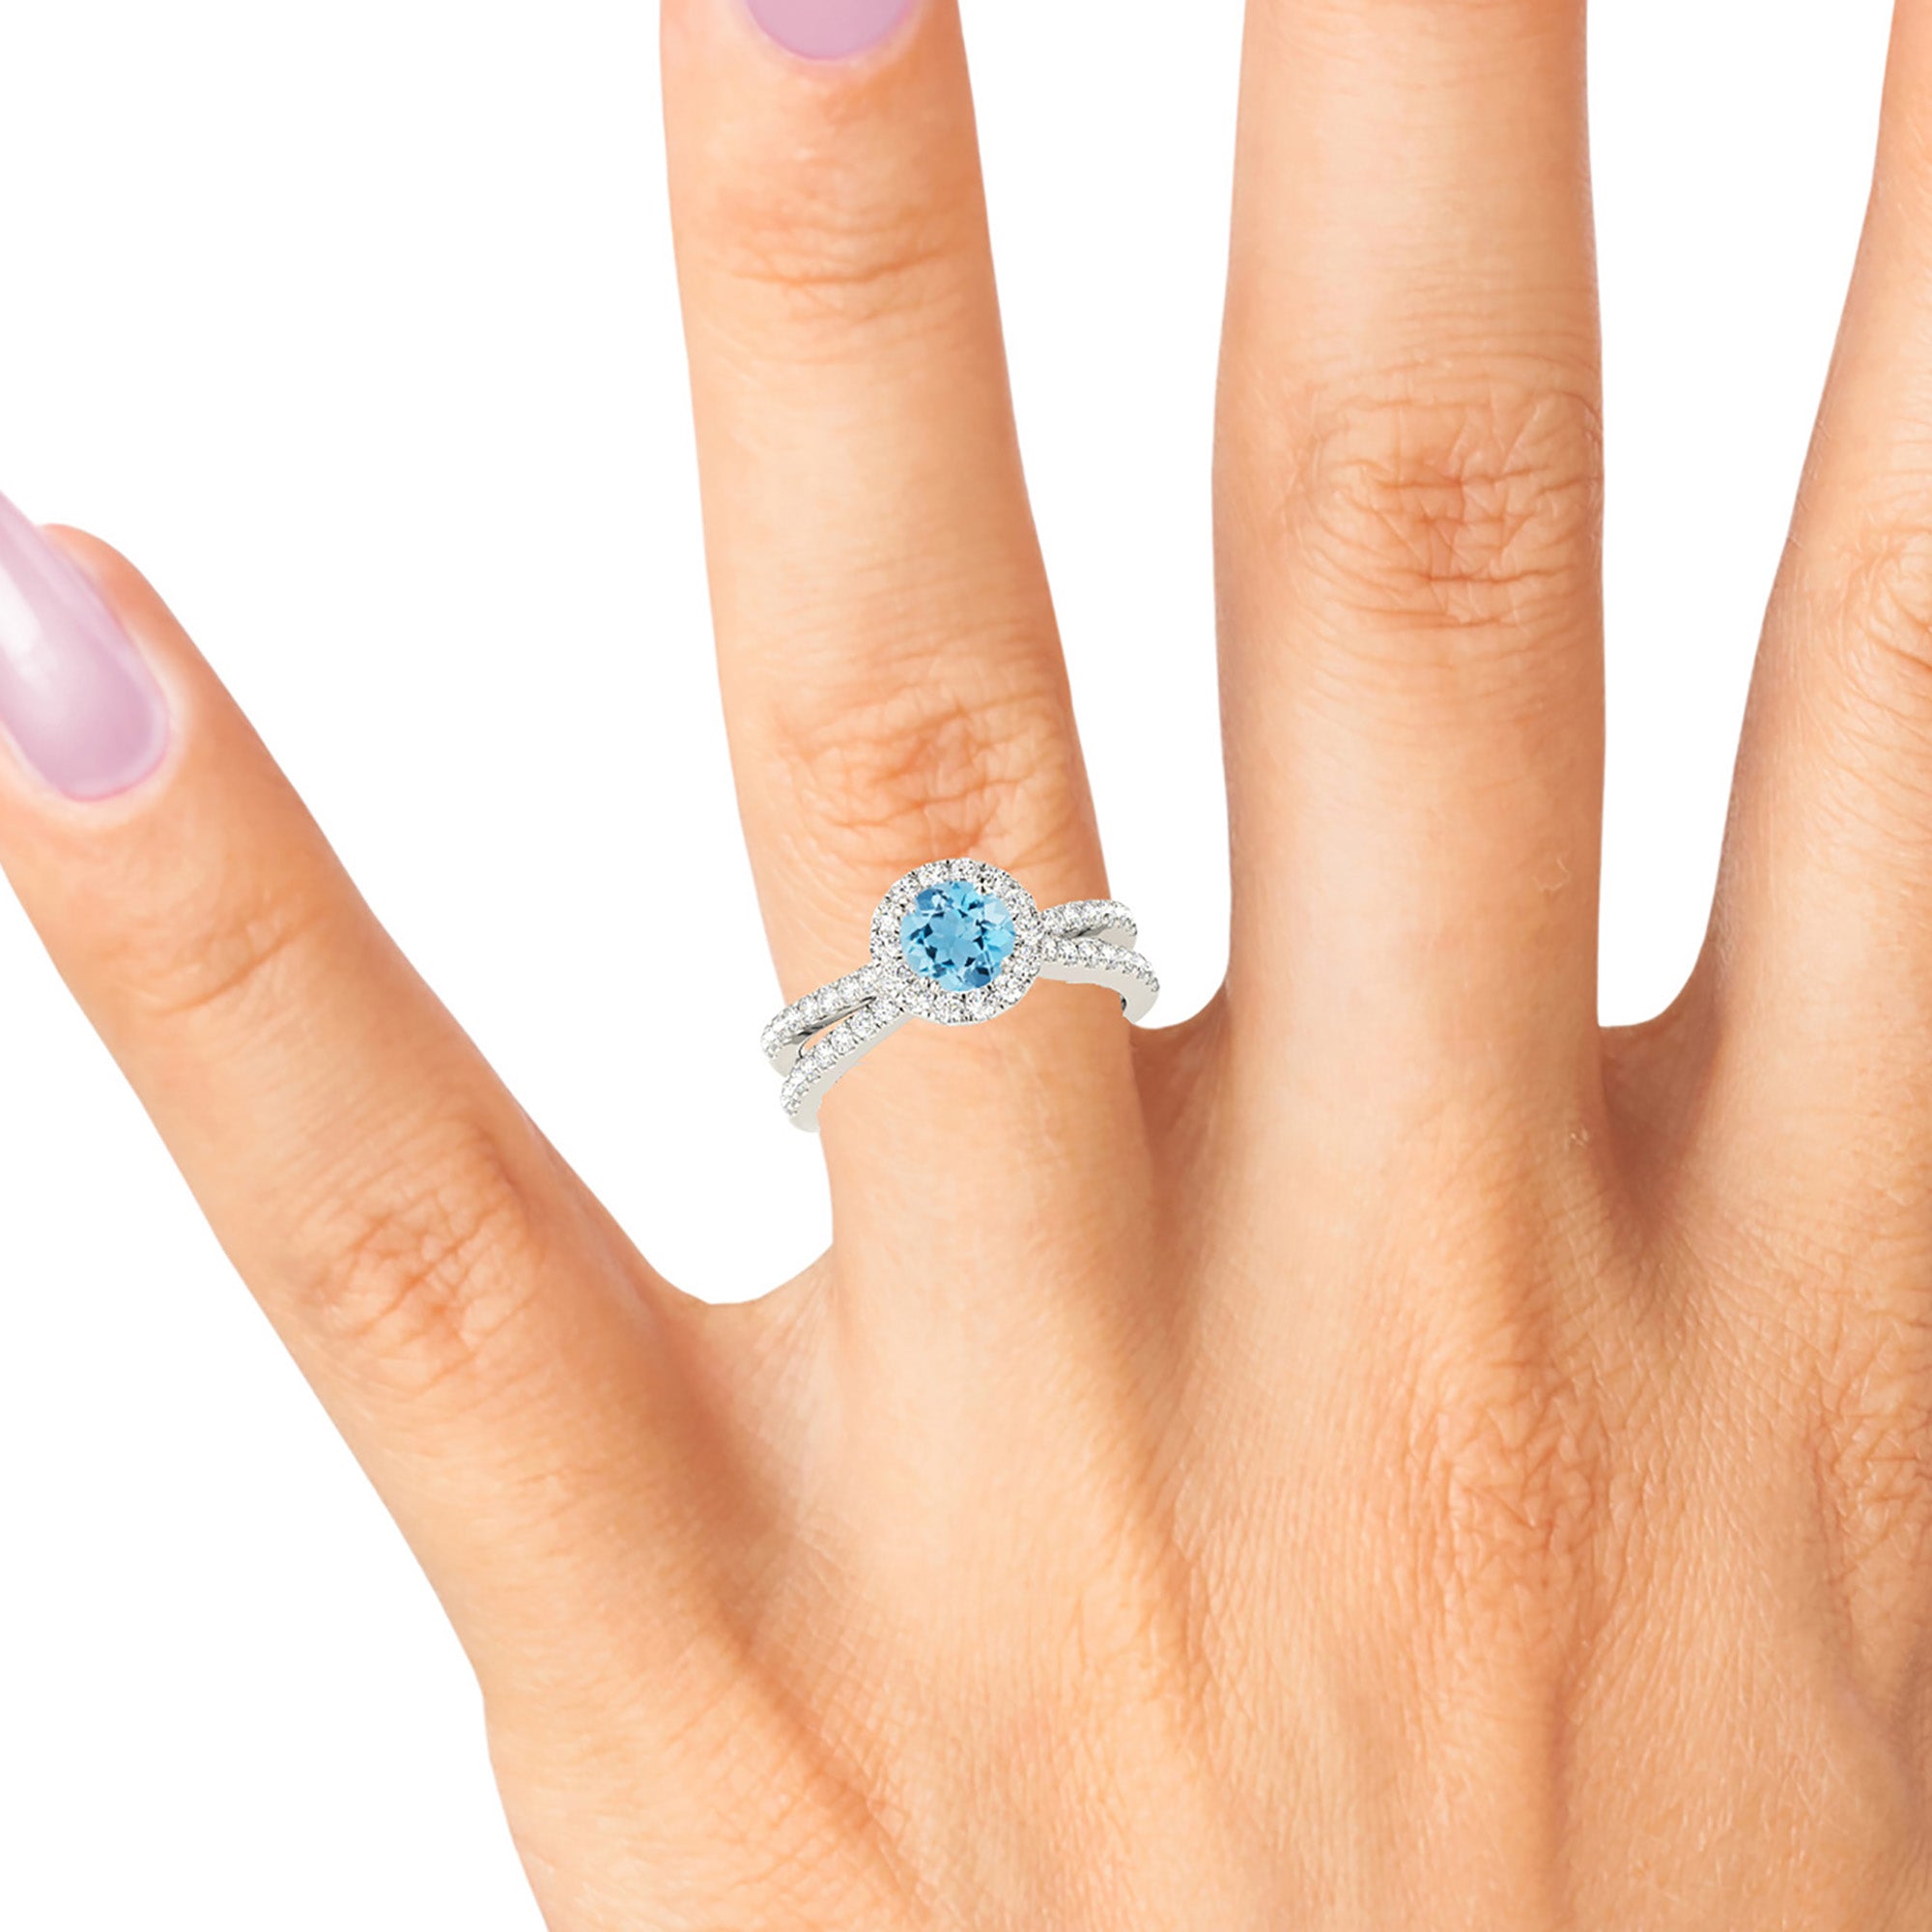 1.10 ct. Genuine Aquamarine Ring With 0.50 ctw. Diamond Halo And Criss-Cross Diamond Band | Round Blue Aquamarine Halo Ring-in 14K/18K White, Yellow, Rose Gold and Platinum - Christmas Jewelry Gift -VIRABYANI